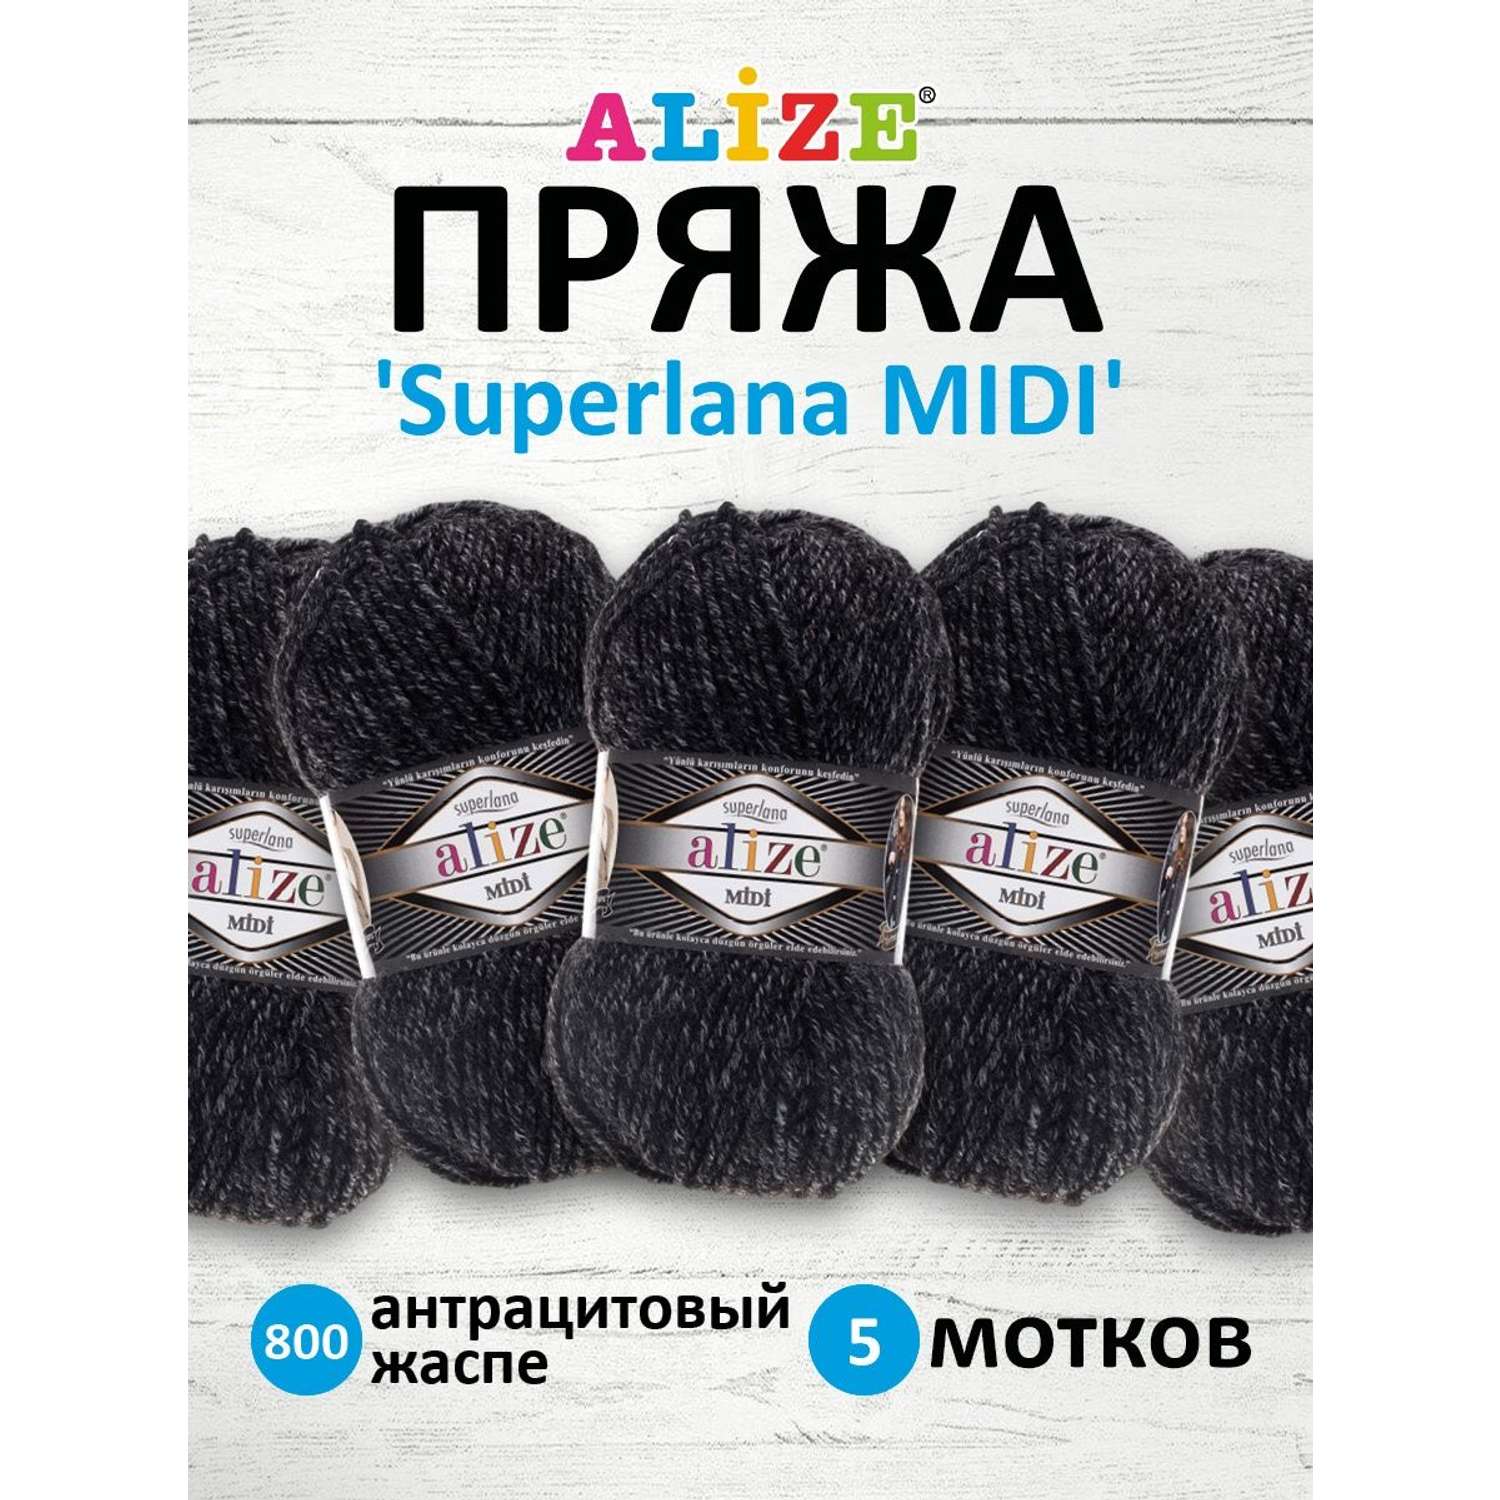 Купить пряжу для вязания в интернет-магазине в Санкт-Петербурге недорого